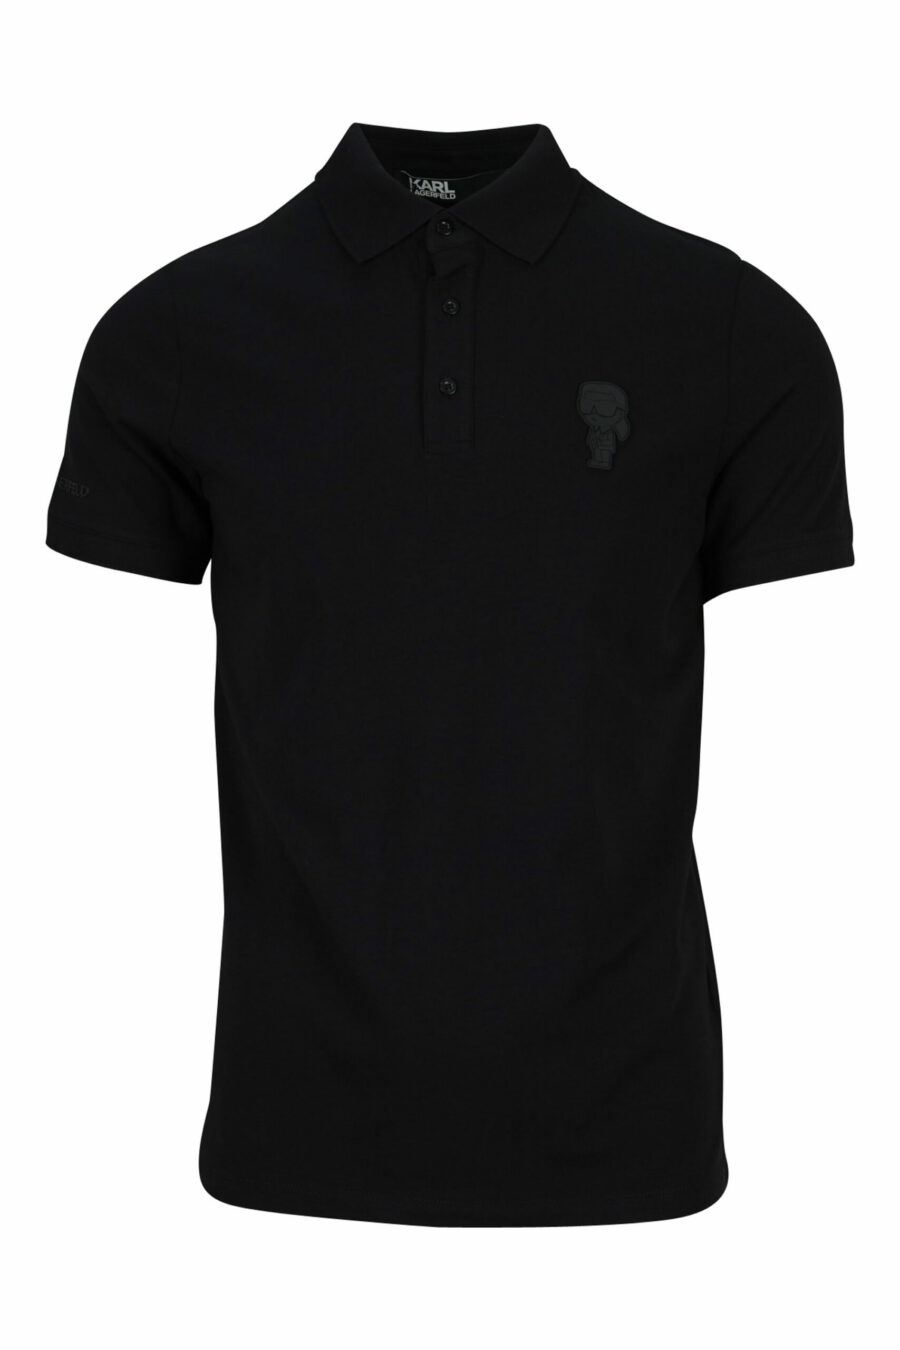 Schwarzes Poloshirt mit monochromem Mini-Logo - 4062226398633 skaliert